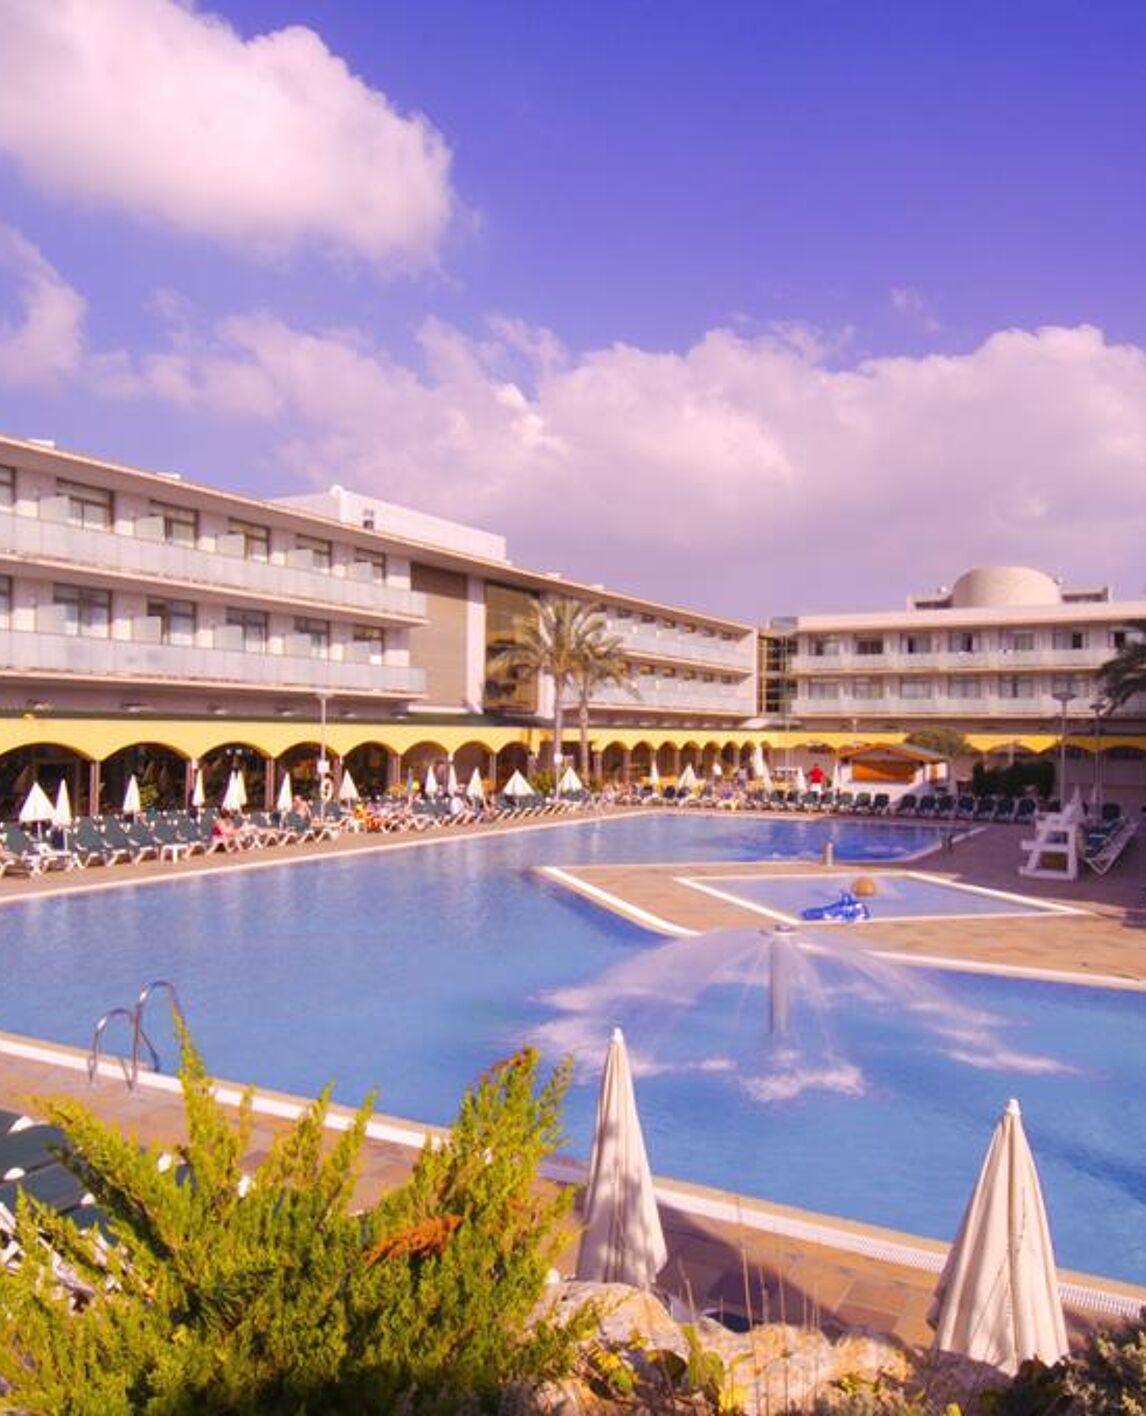 hotel-mediterraneo